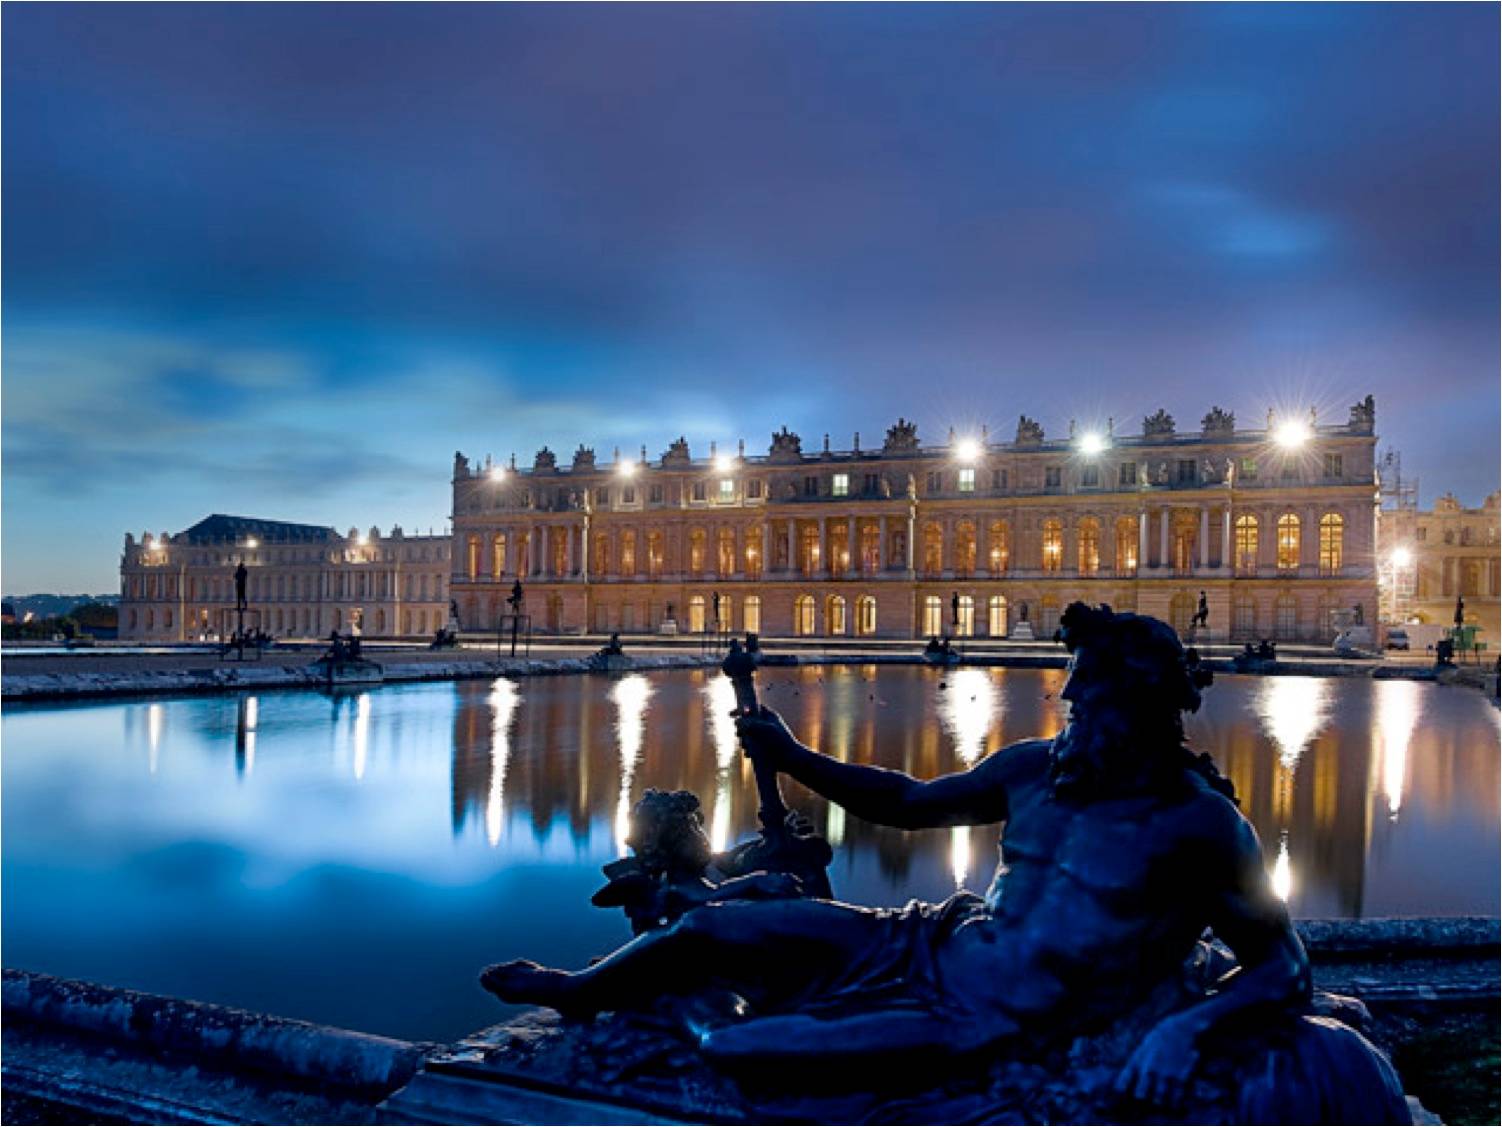 Ночной версаль. Версальский дворец ночью. Версаль Франция. Версаль Франция ночь. Версальский дворец зимой.